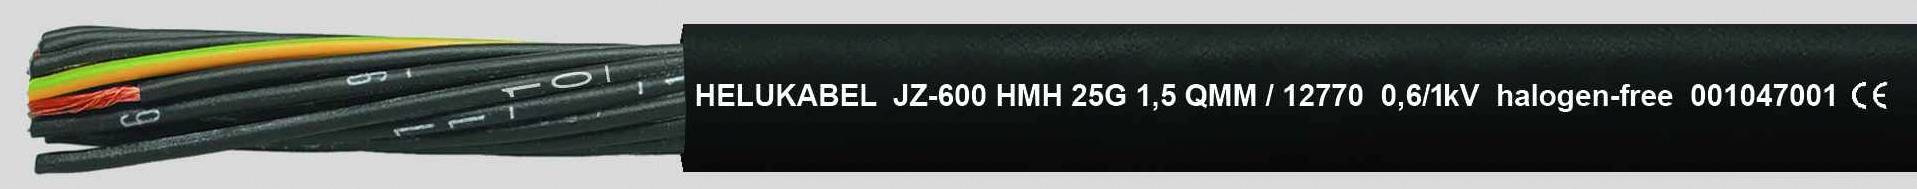 HELUKABEL JZ-600 HMH Steuerleitung 4 G 1.50 mm² Schwarz 12762-500 500 m